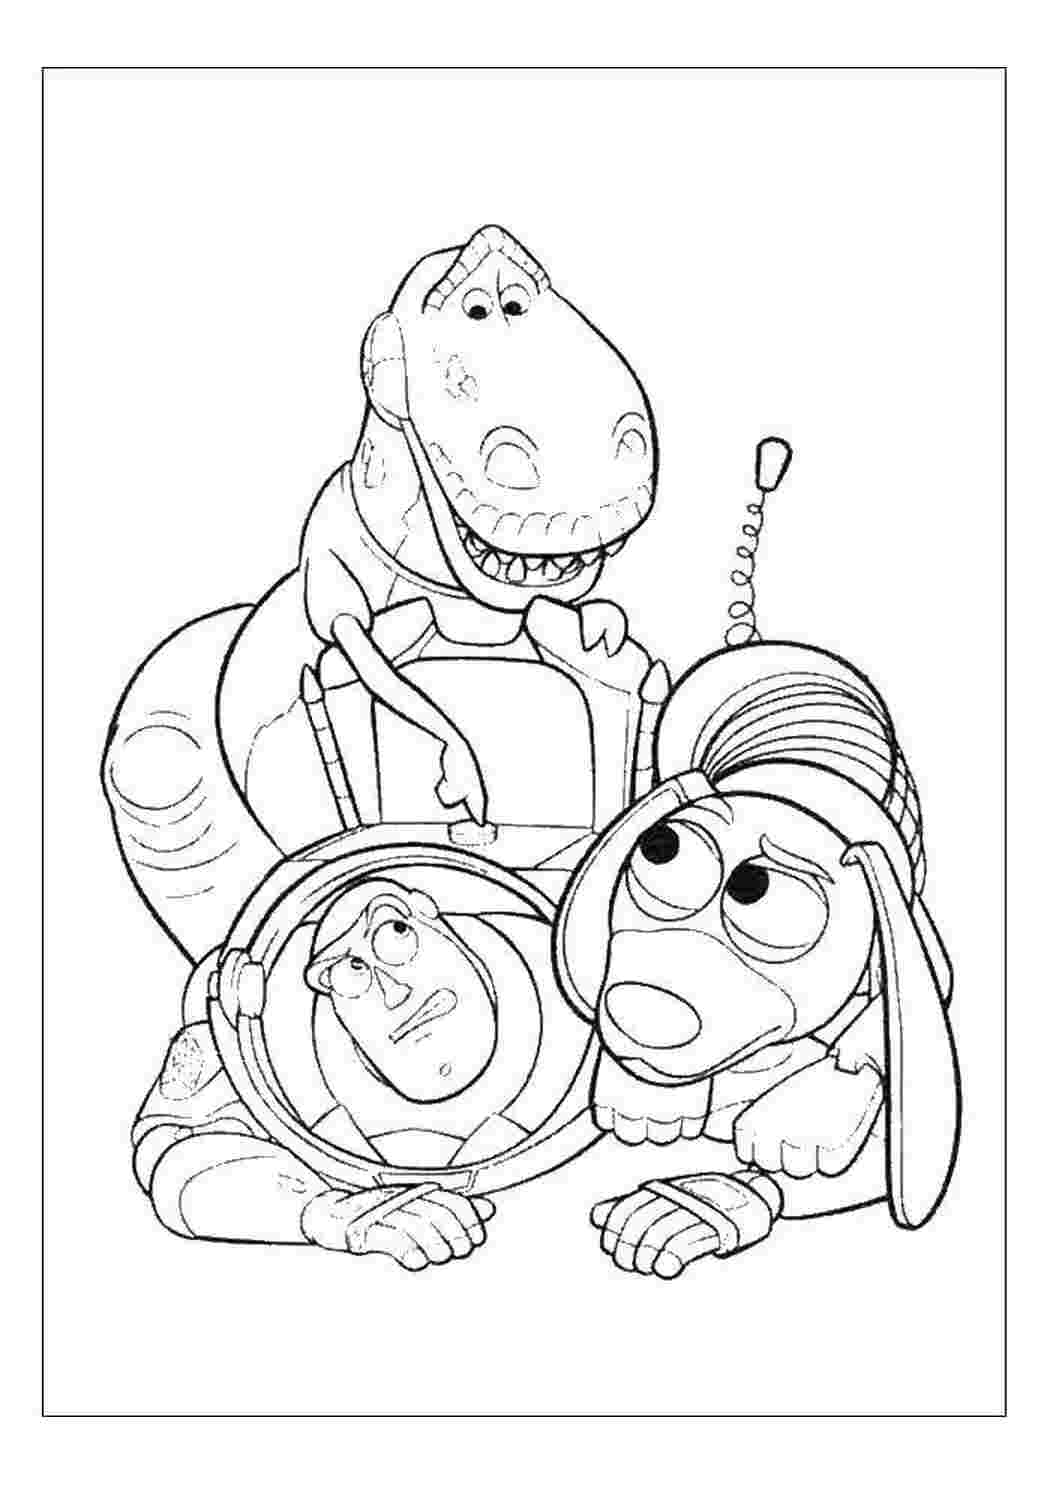 Раскраски Базз лайтер  и его друзья мультики Вуди, игрушки